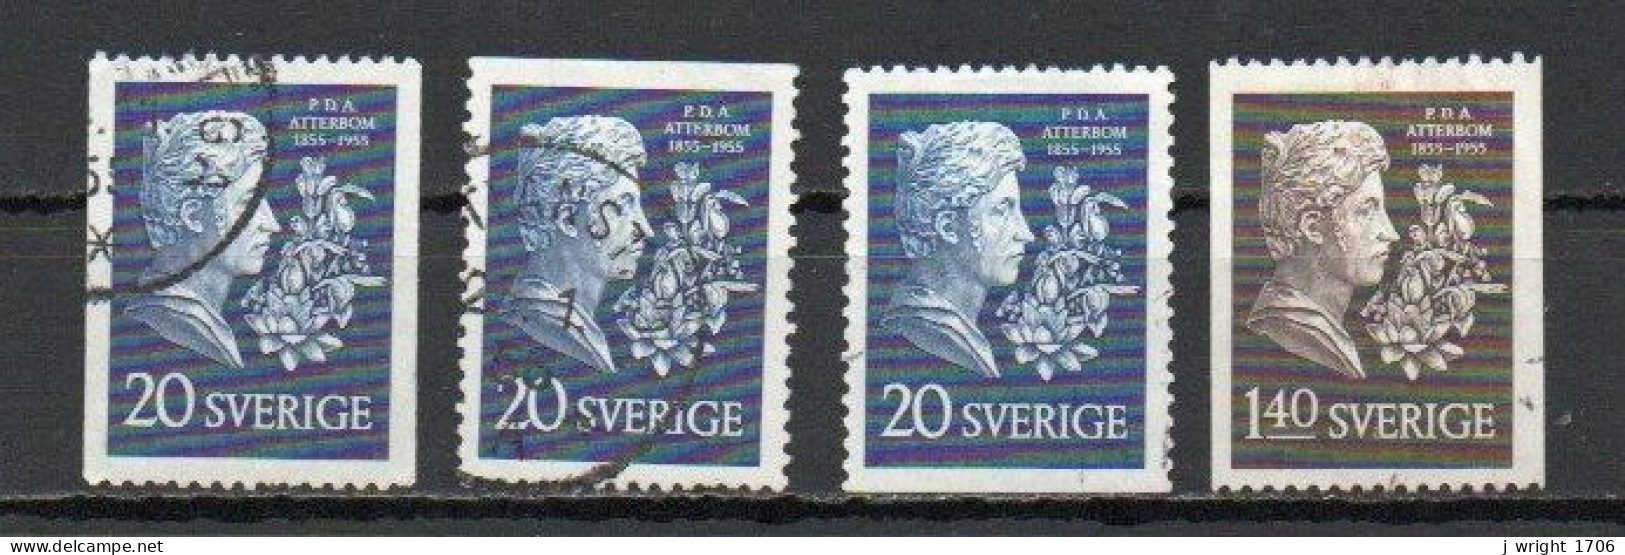 Sweden, 1955, Per Daniel Amadeus Atterbom, Set, USED  - Usados